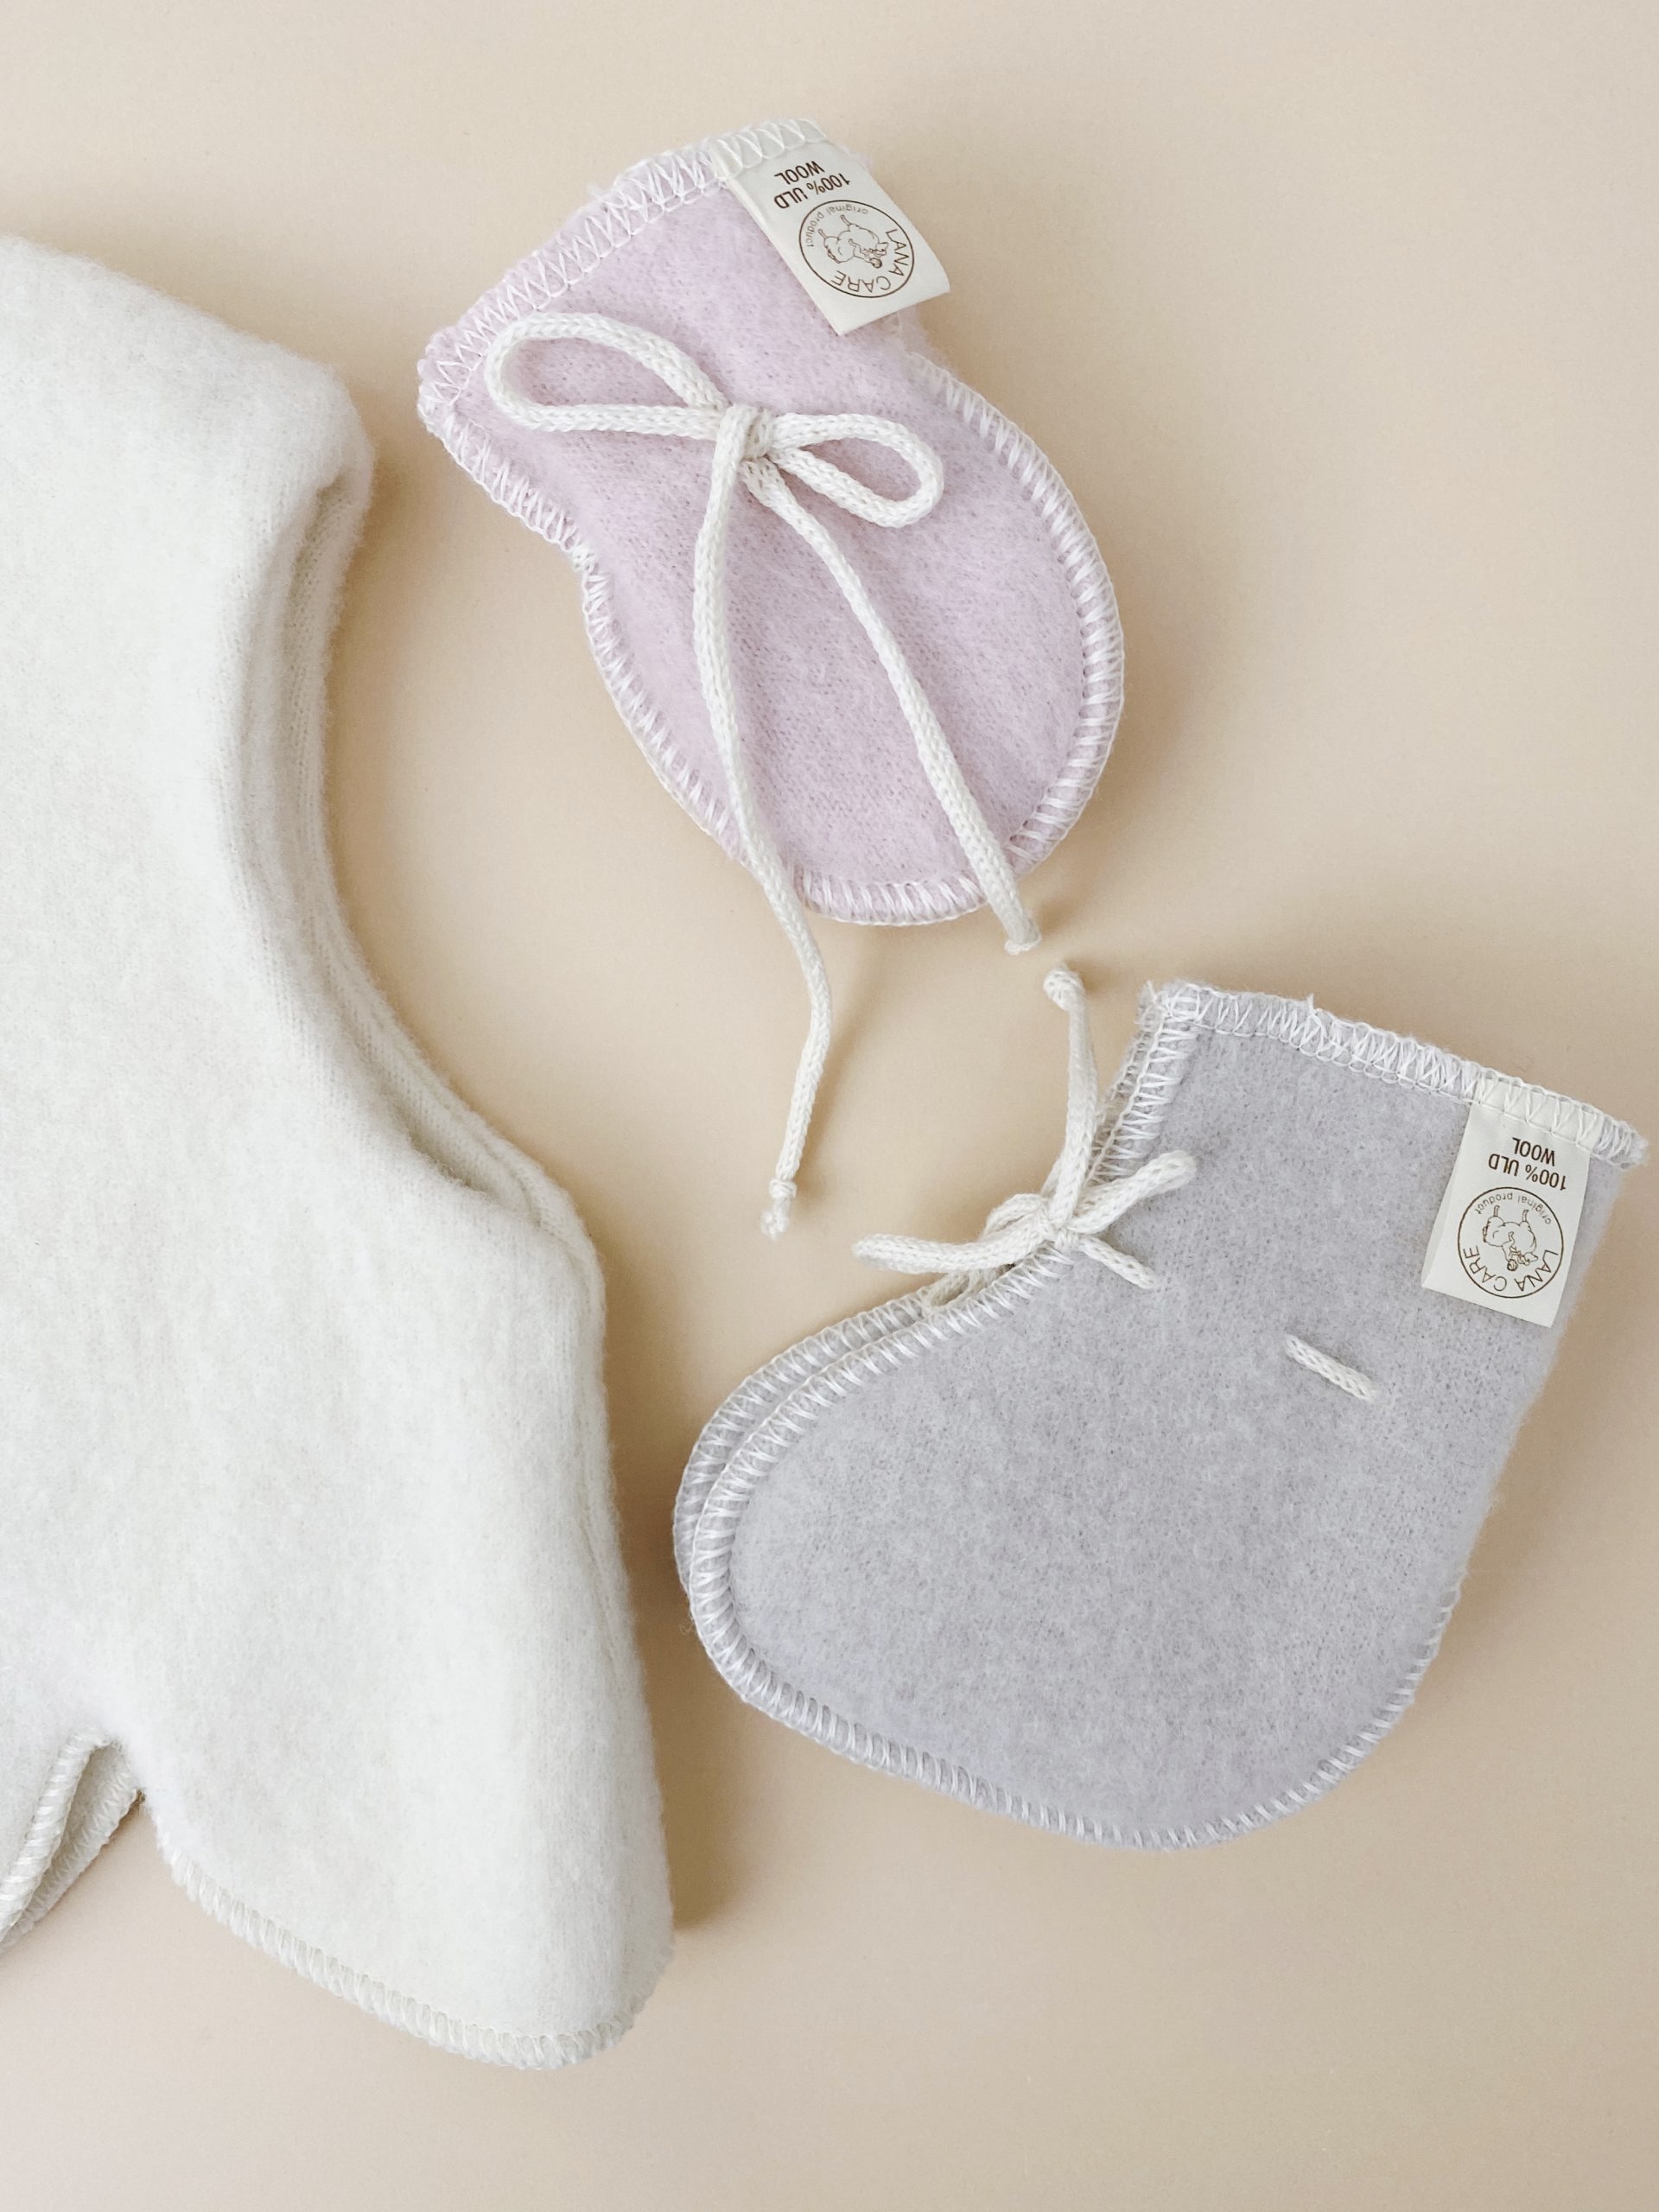 LANACare baby mittens in organic merino wool 